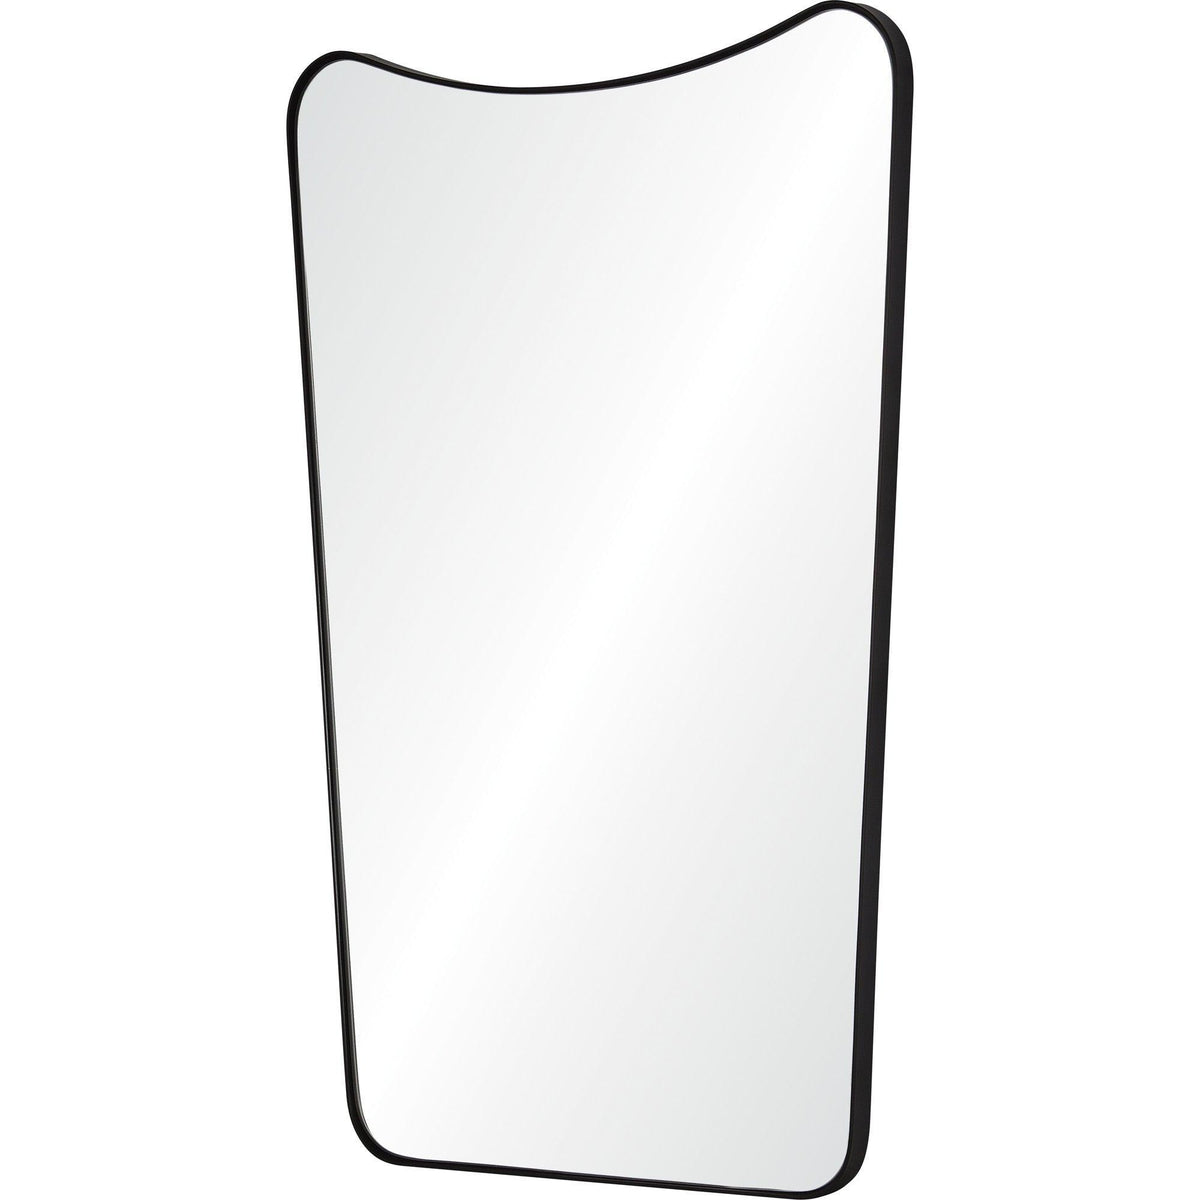 Renwil - Nashua Rectangular Mirror - MT2509 | Montreal Lighting & Hardware